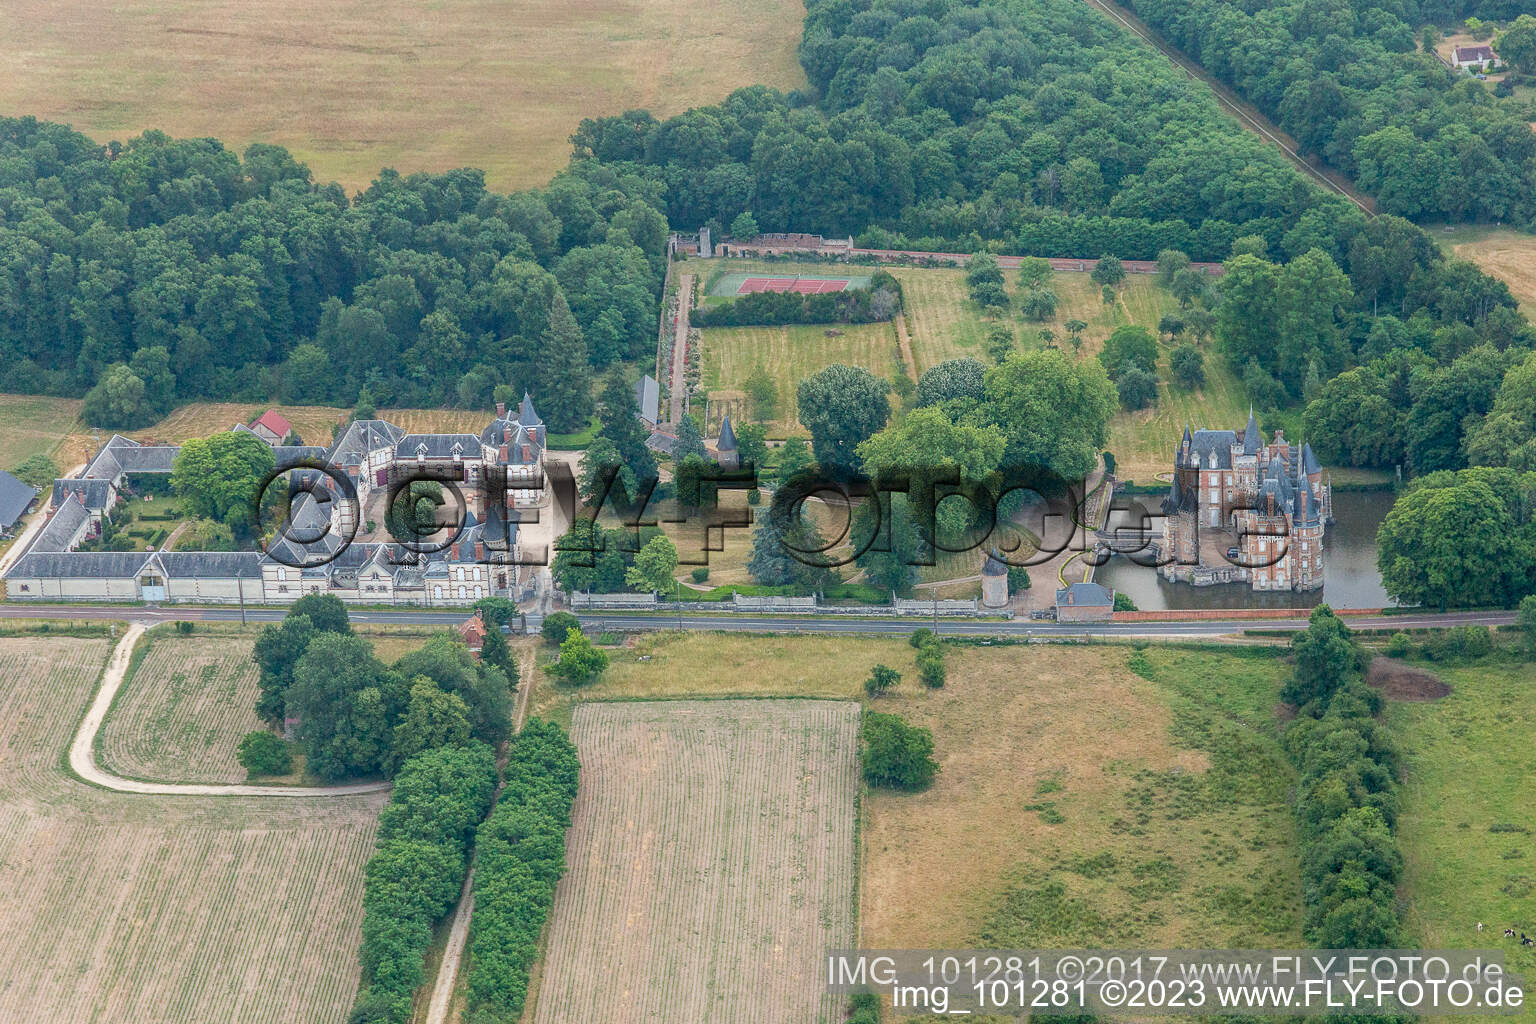 Photographie aérienne de Bâtiments et installations du parc du château du château à douves Château de Combreux à Combreux dans le département Loiret, France